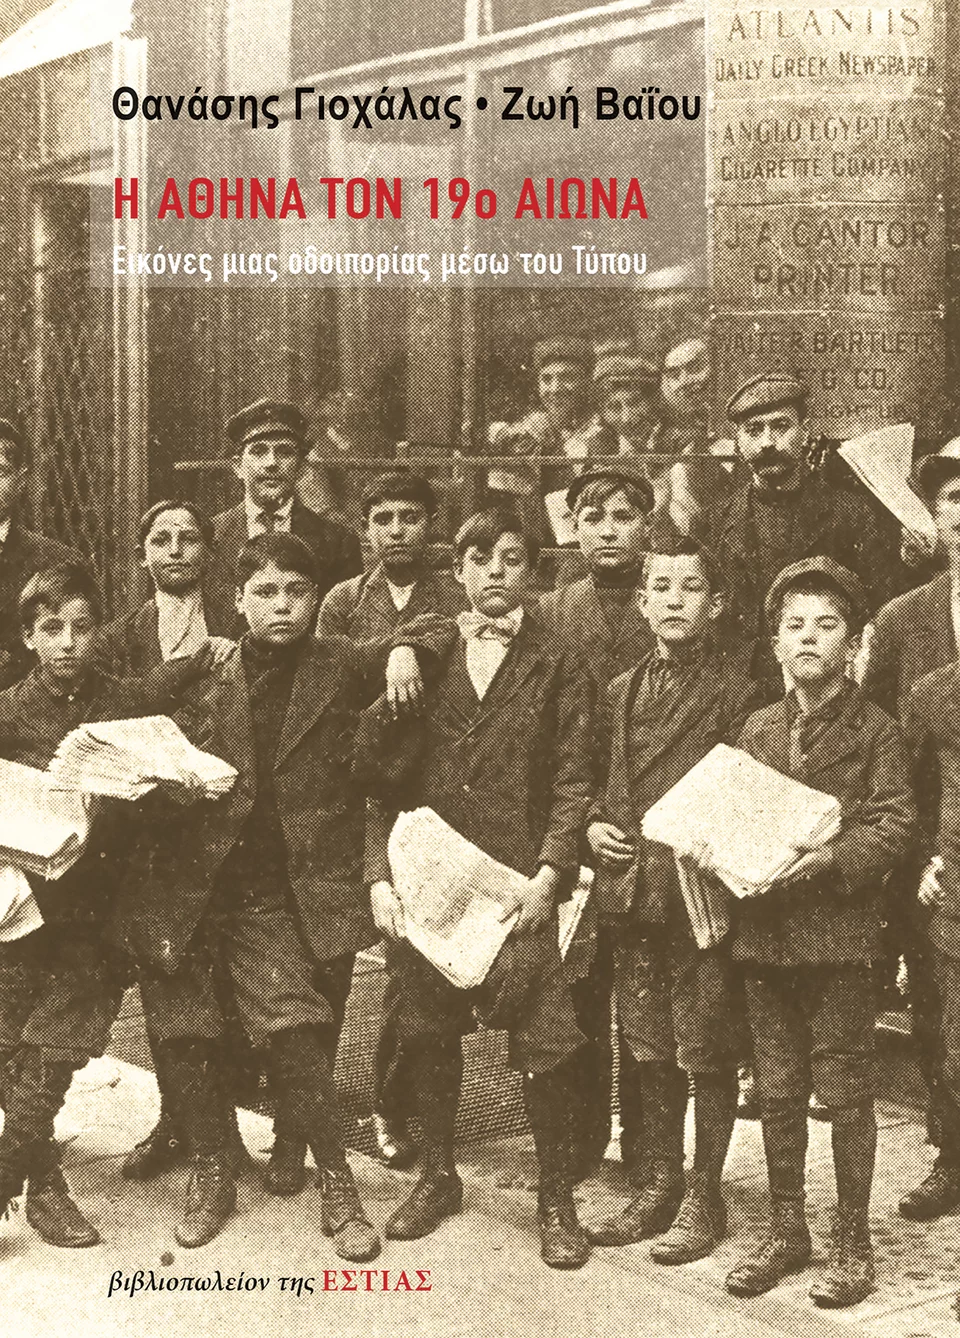 Το εξώφυλλο του βιβλίου «Η Αθήνα τον 19ο αιώνα: Εικόνες μιας οδοιπορίας μέσω του Τύπου» των Θανάση Γιοχάλα και Ζωής Βαΐου (εκδ. Εστία). 